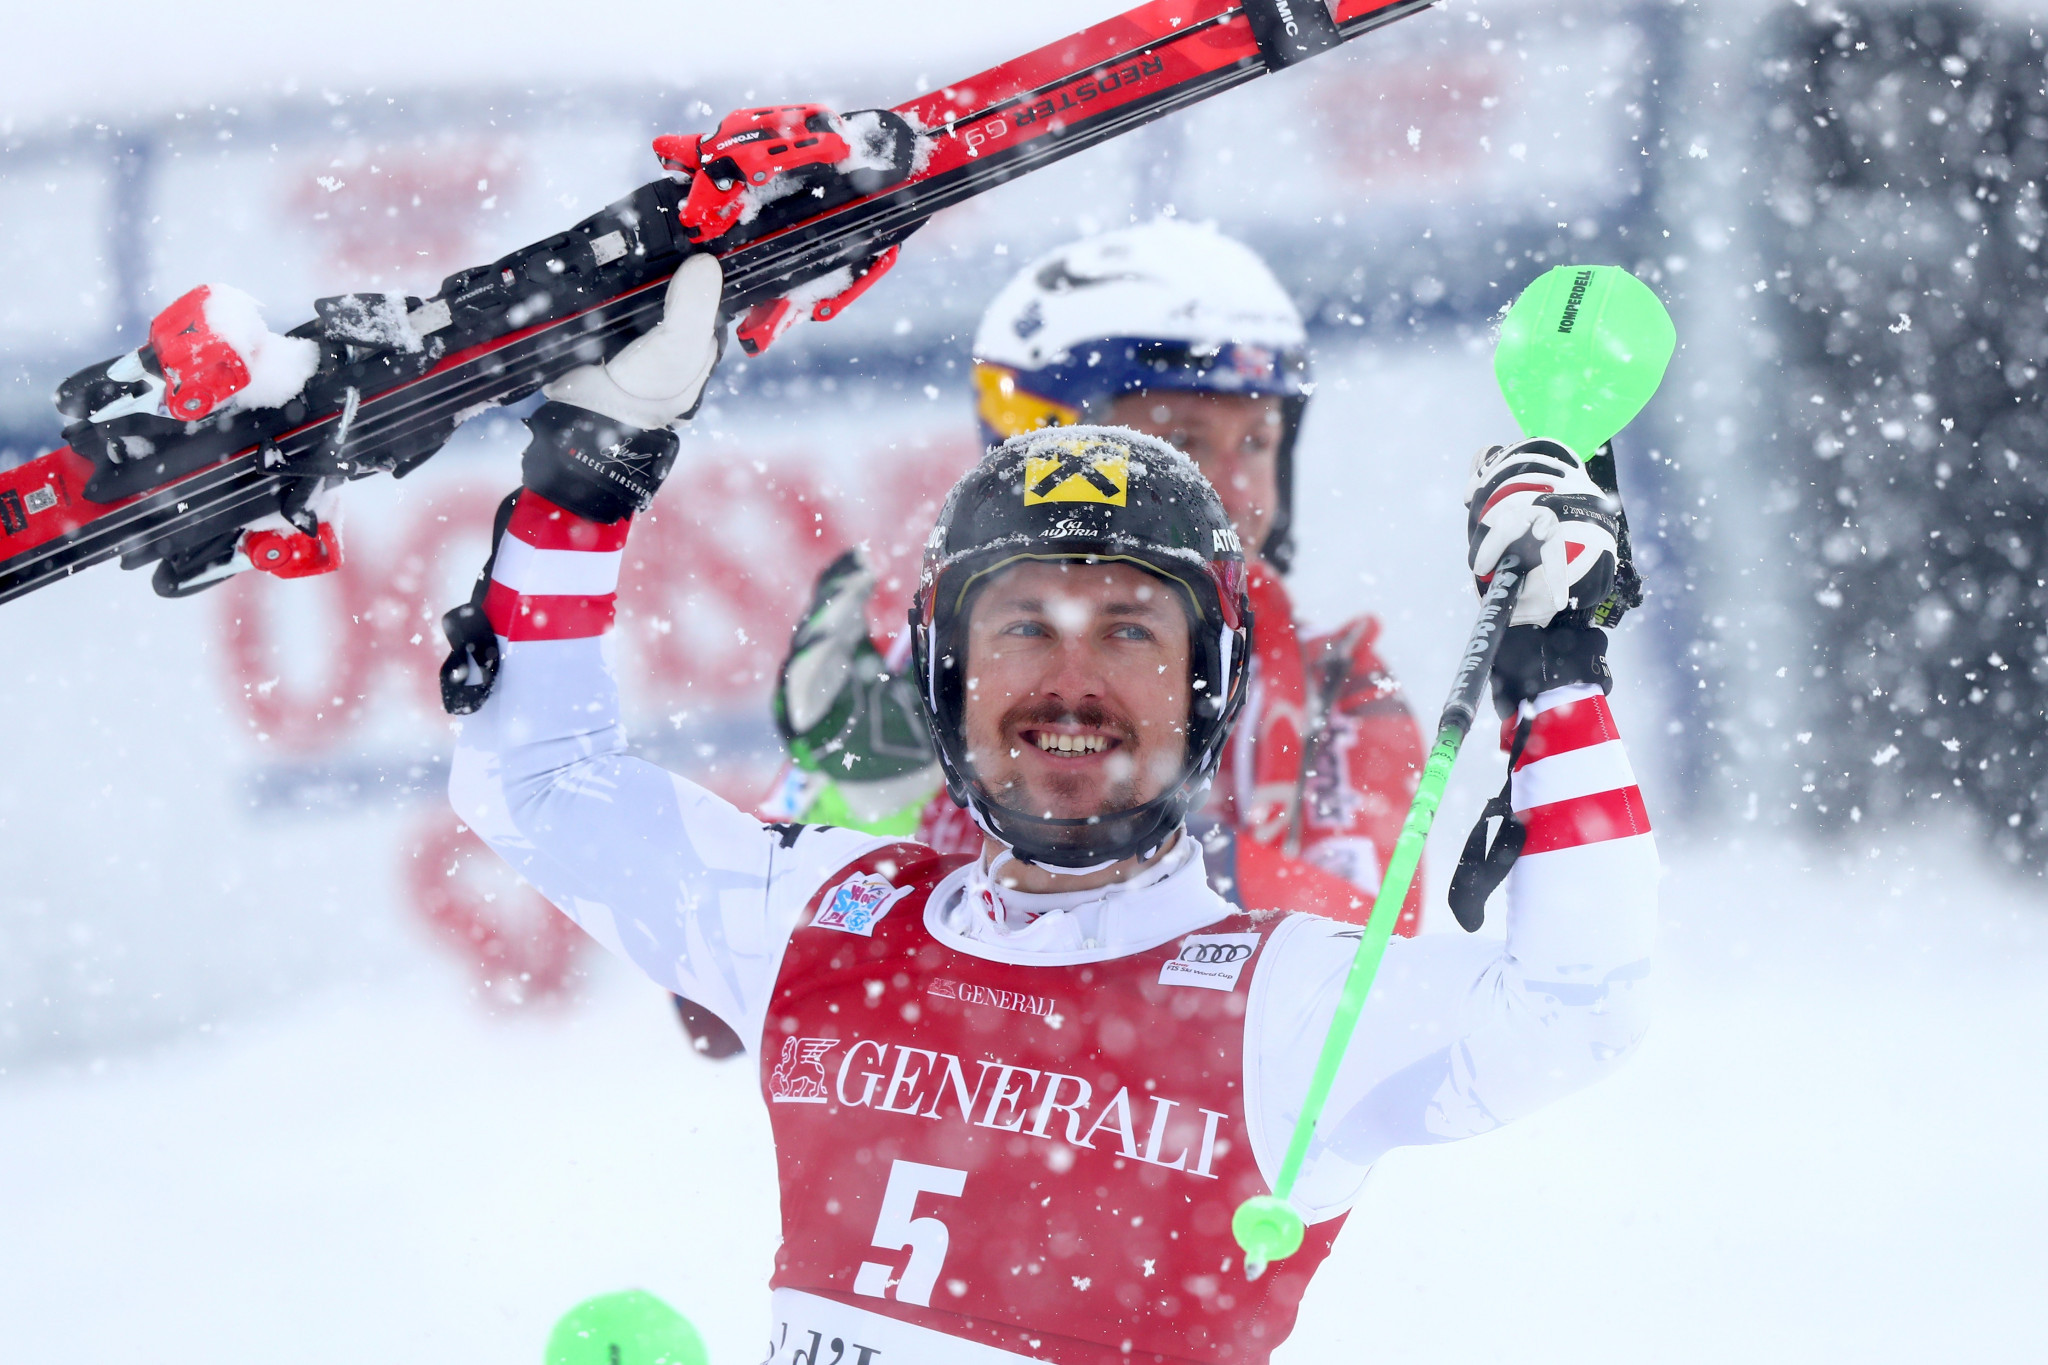 Austrian Hirscher wins FIS Alpine Ski World Cup Men's Slalom in Val-d'Isere